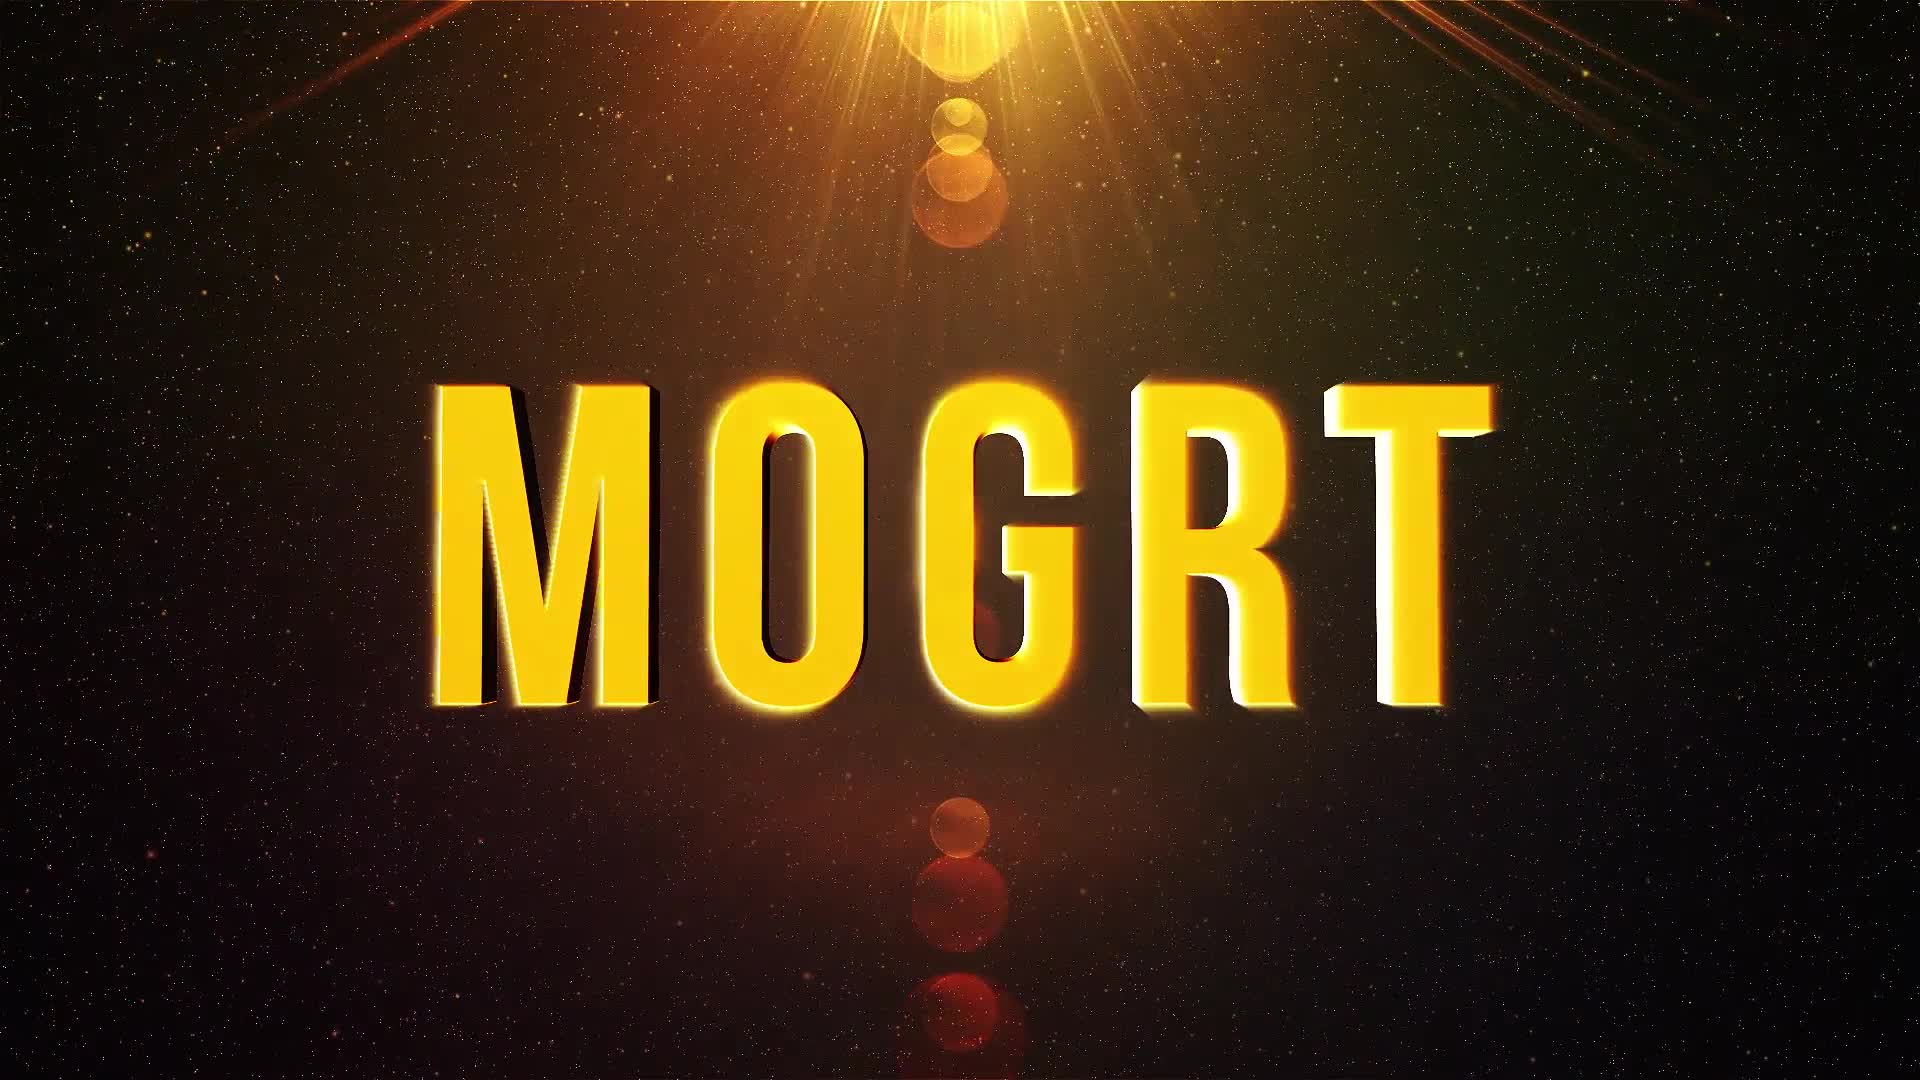 Epic Title Intro (mogrt) Videohive 23516202 Premiere Pro Image 7